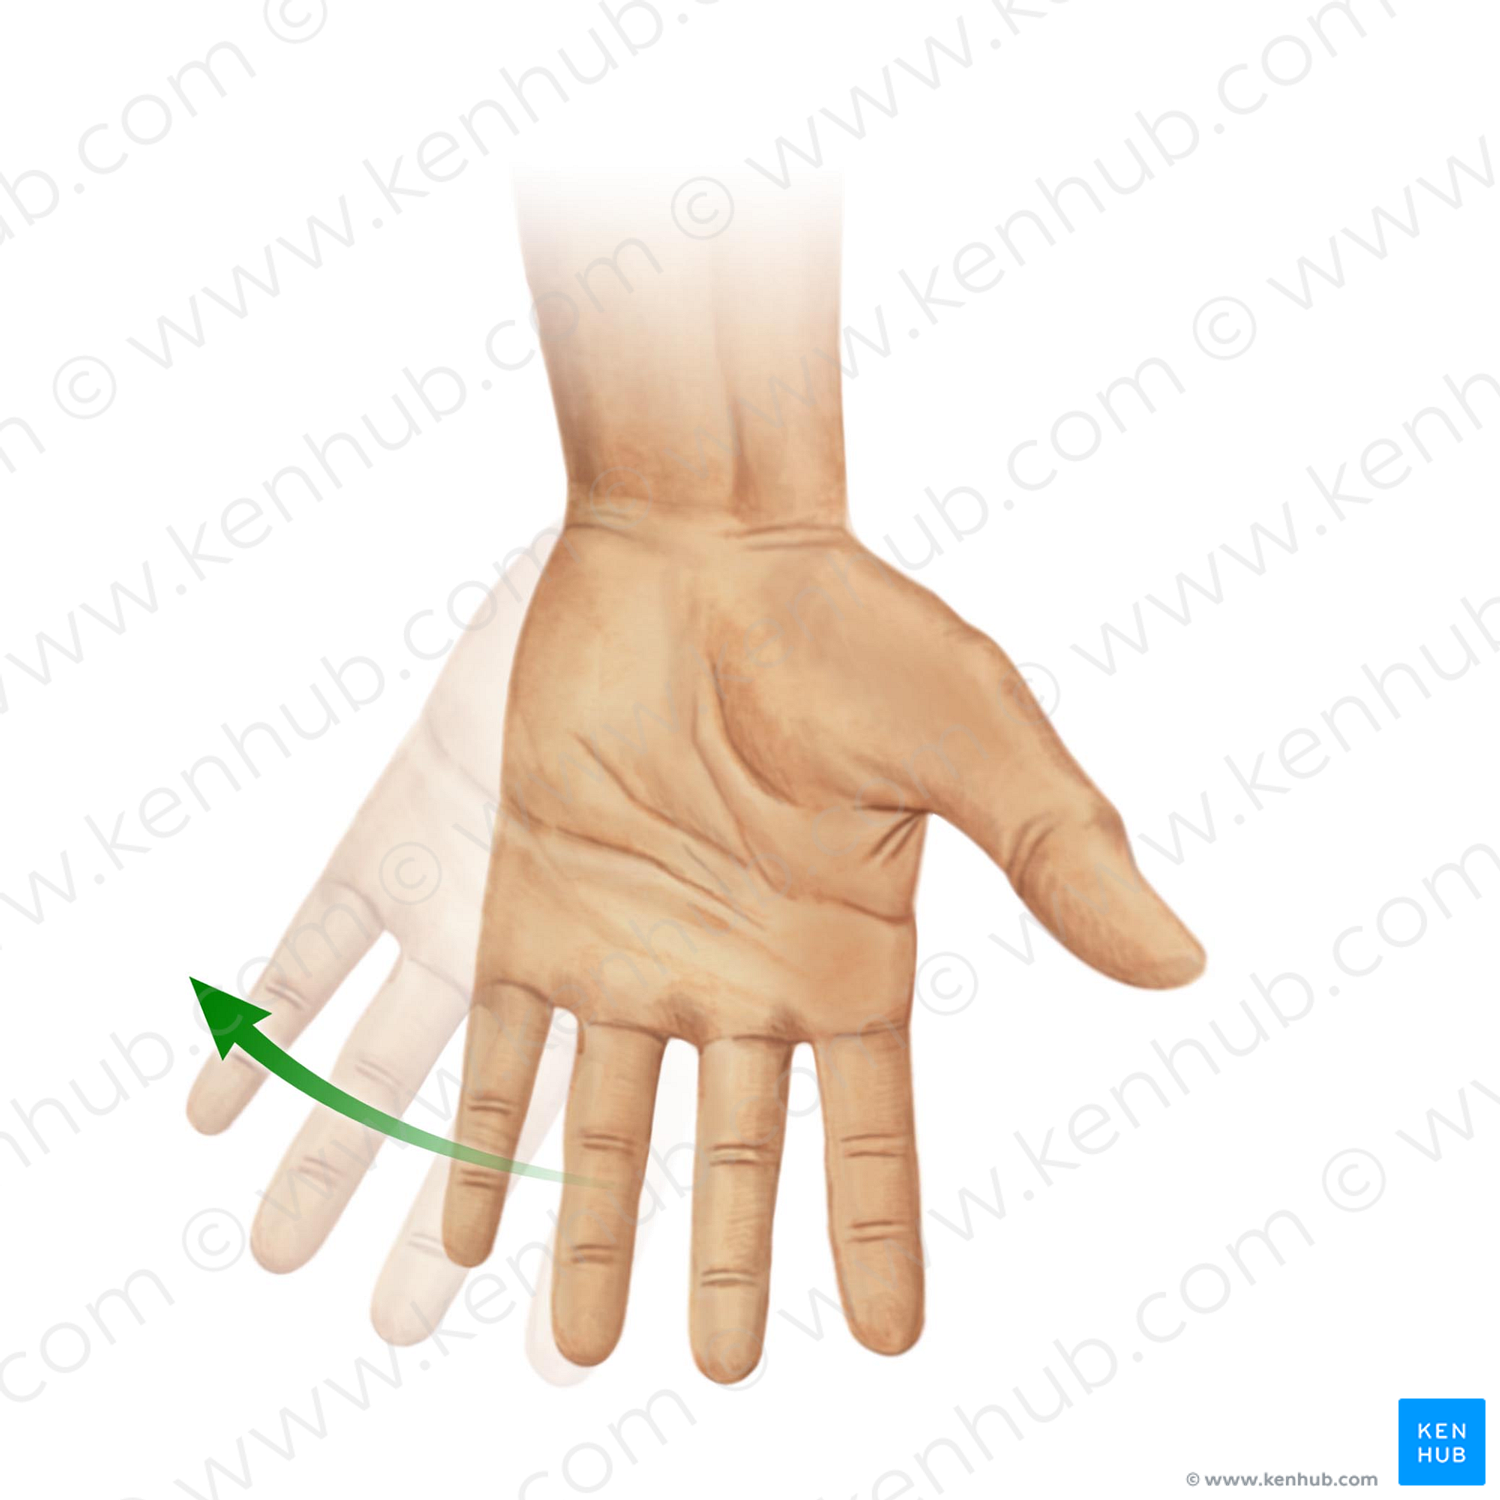 Ulnar flexion of hand (#11036)